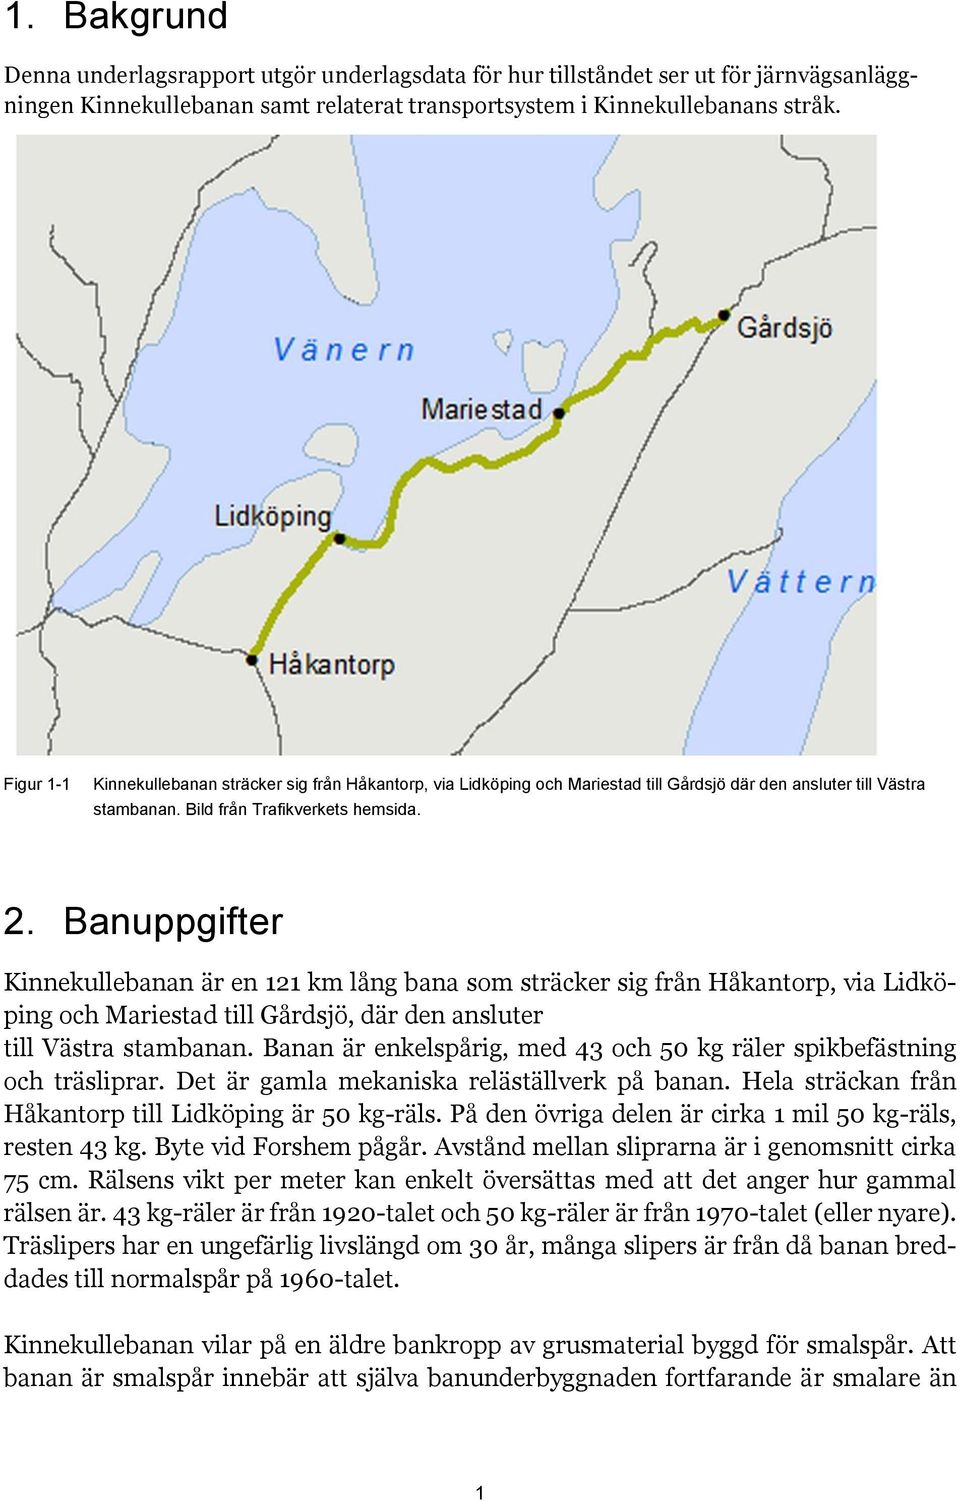 Banuppgifter Kinnekullebanan är en 121 km lång bana som sträcker sig från Håkantorp, via Lidköping och Mariestad till Gårdsjö, där den ansluter till Västra stambanan.